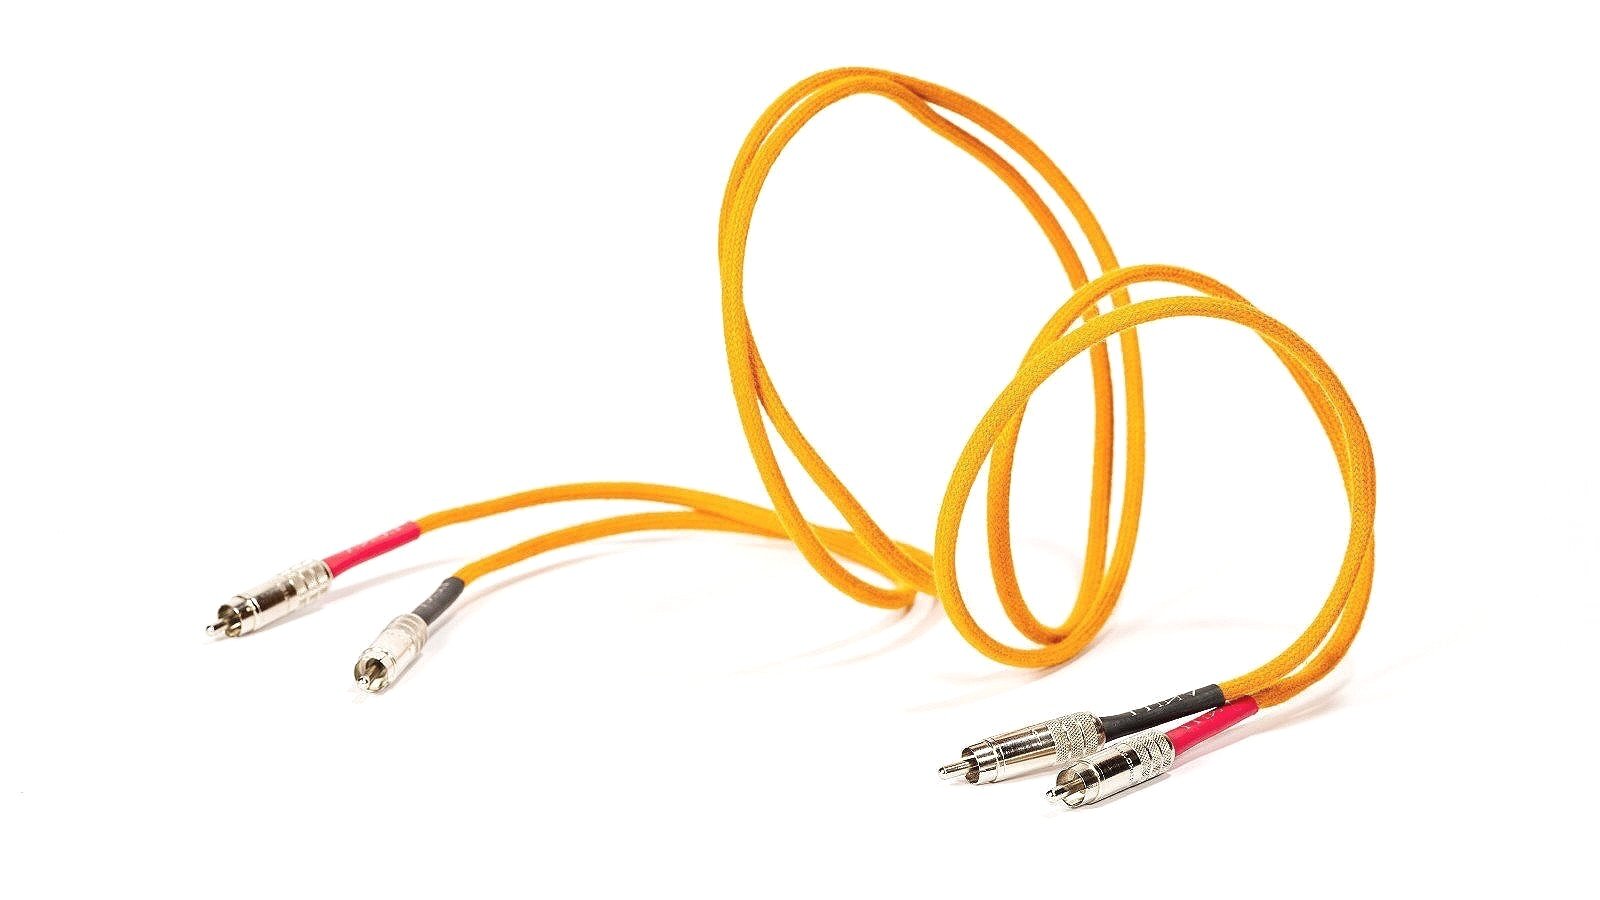 スーパーセール期間限定 Luna Cables RCAケーブル ORANGE RCA 1m オランジュ ルナケーブル インターコネクトケーブル ペア  1.0m